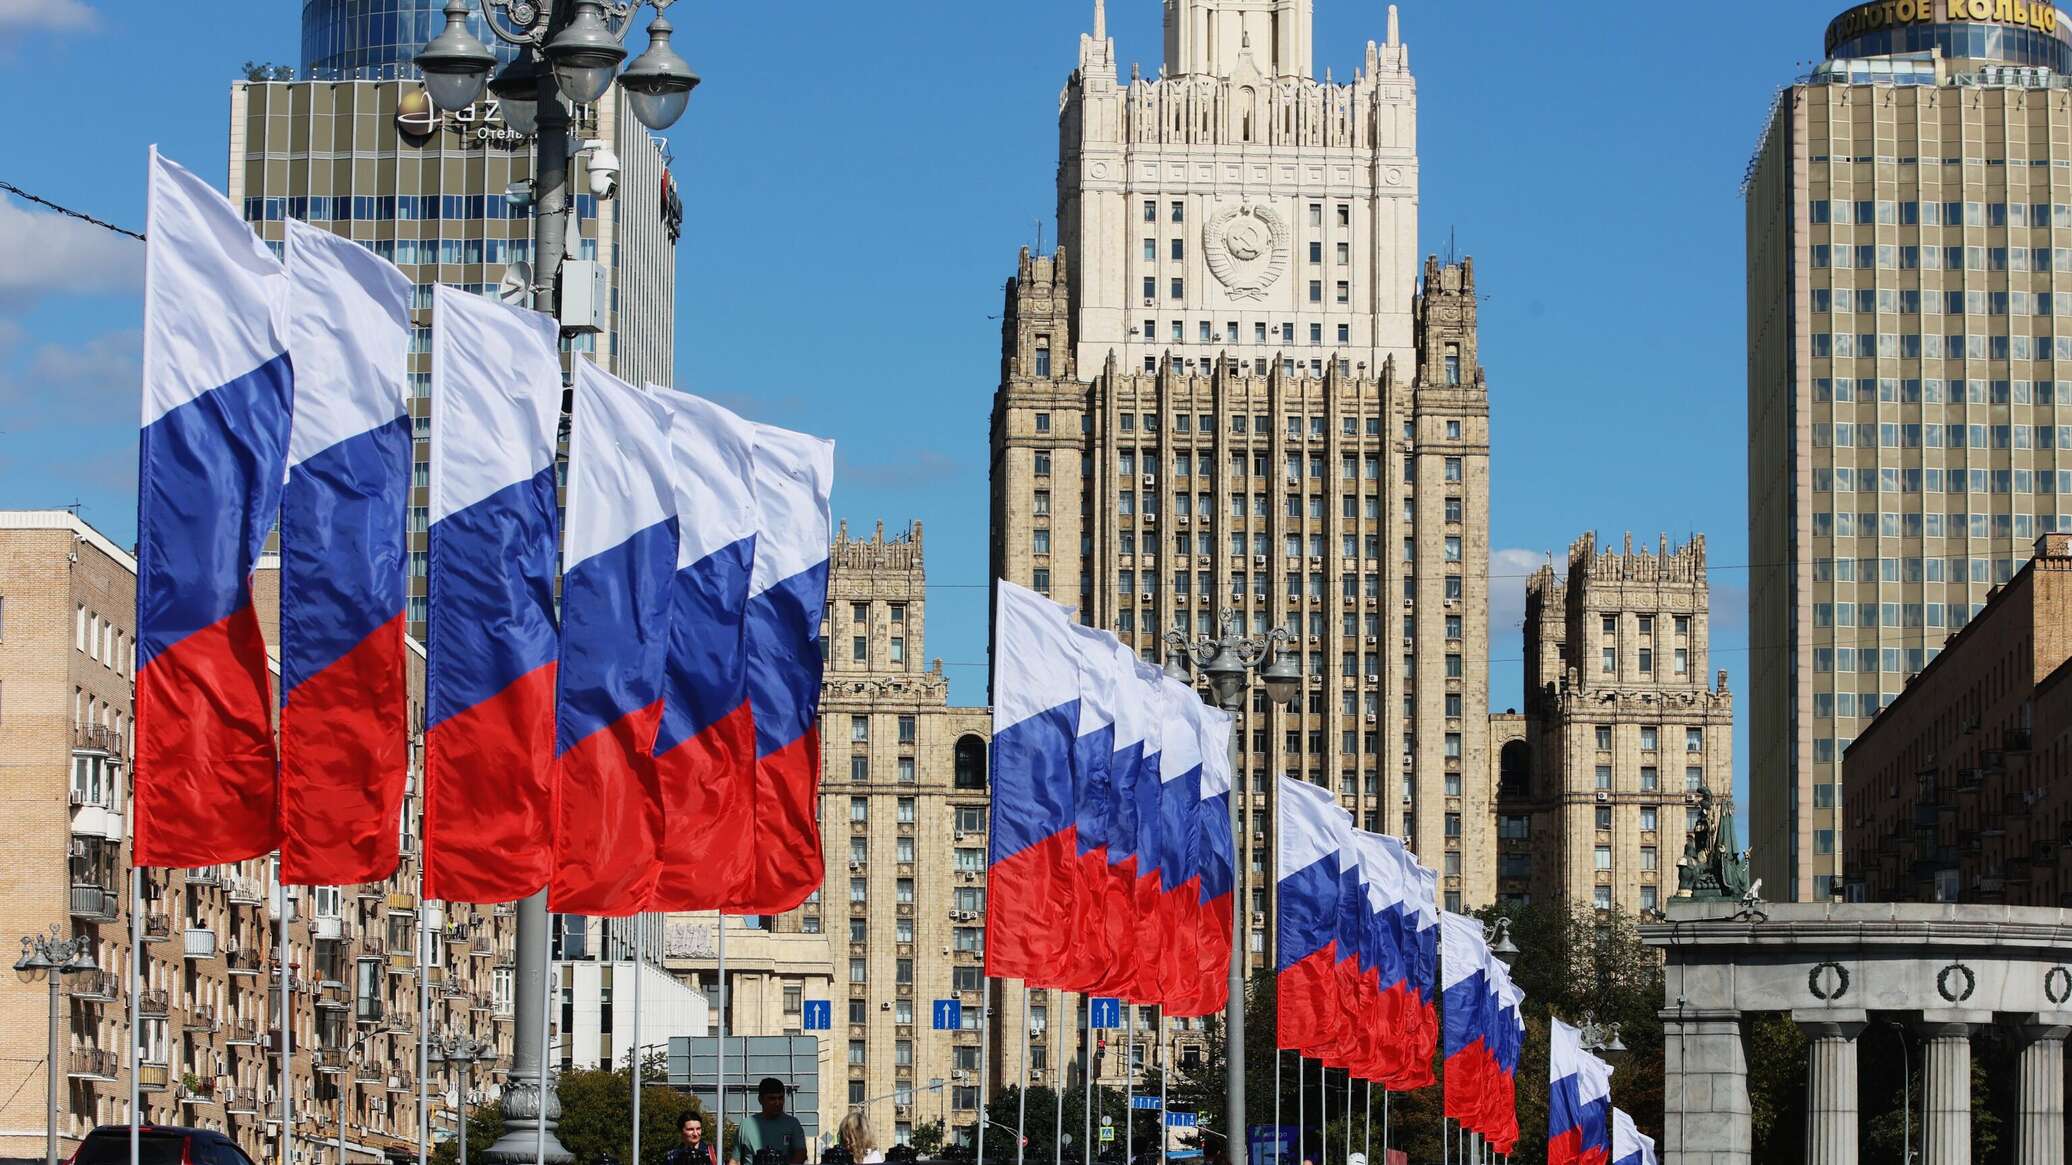 الخارجية الروسية: موسكو مستعدة لعقد اجتماع جديد للفصائل الفلسطينية